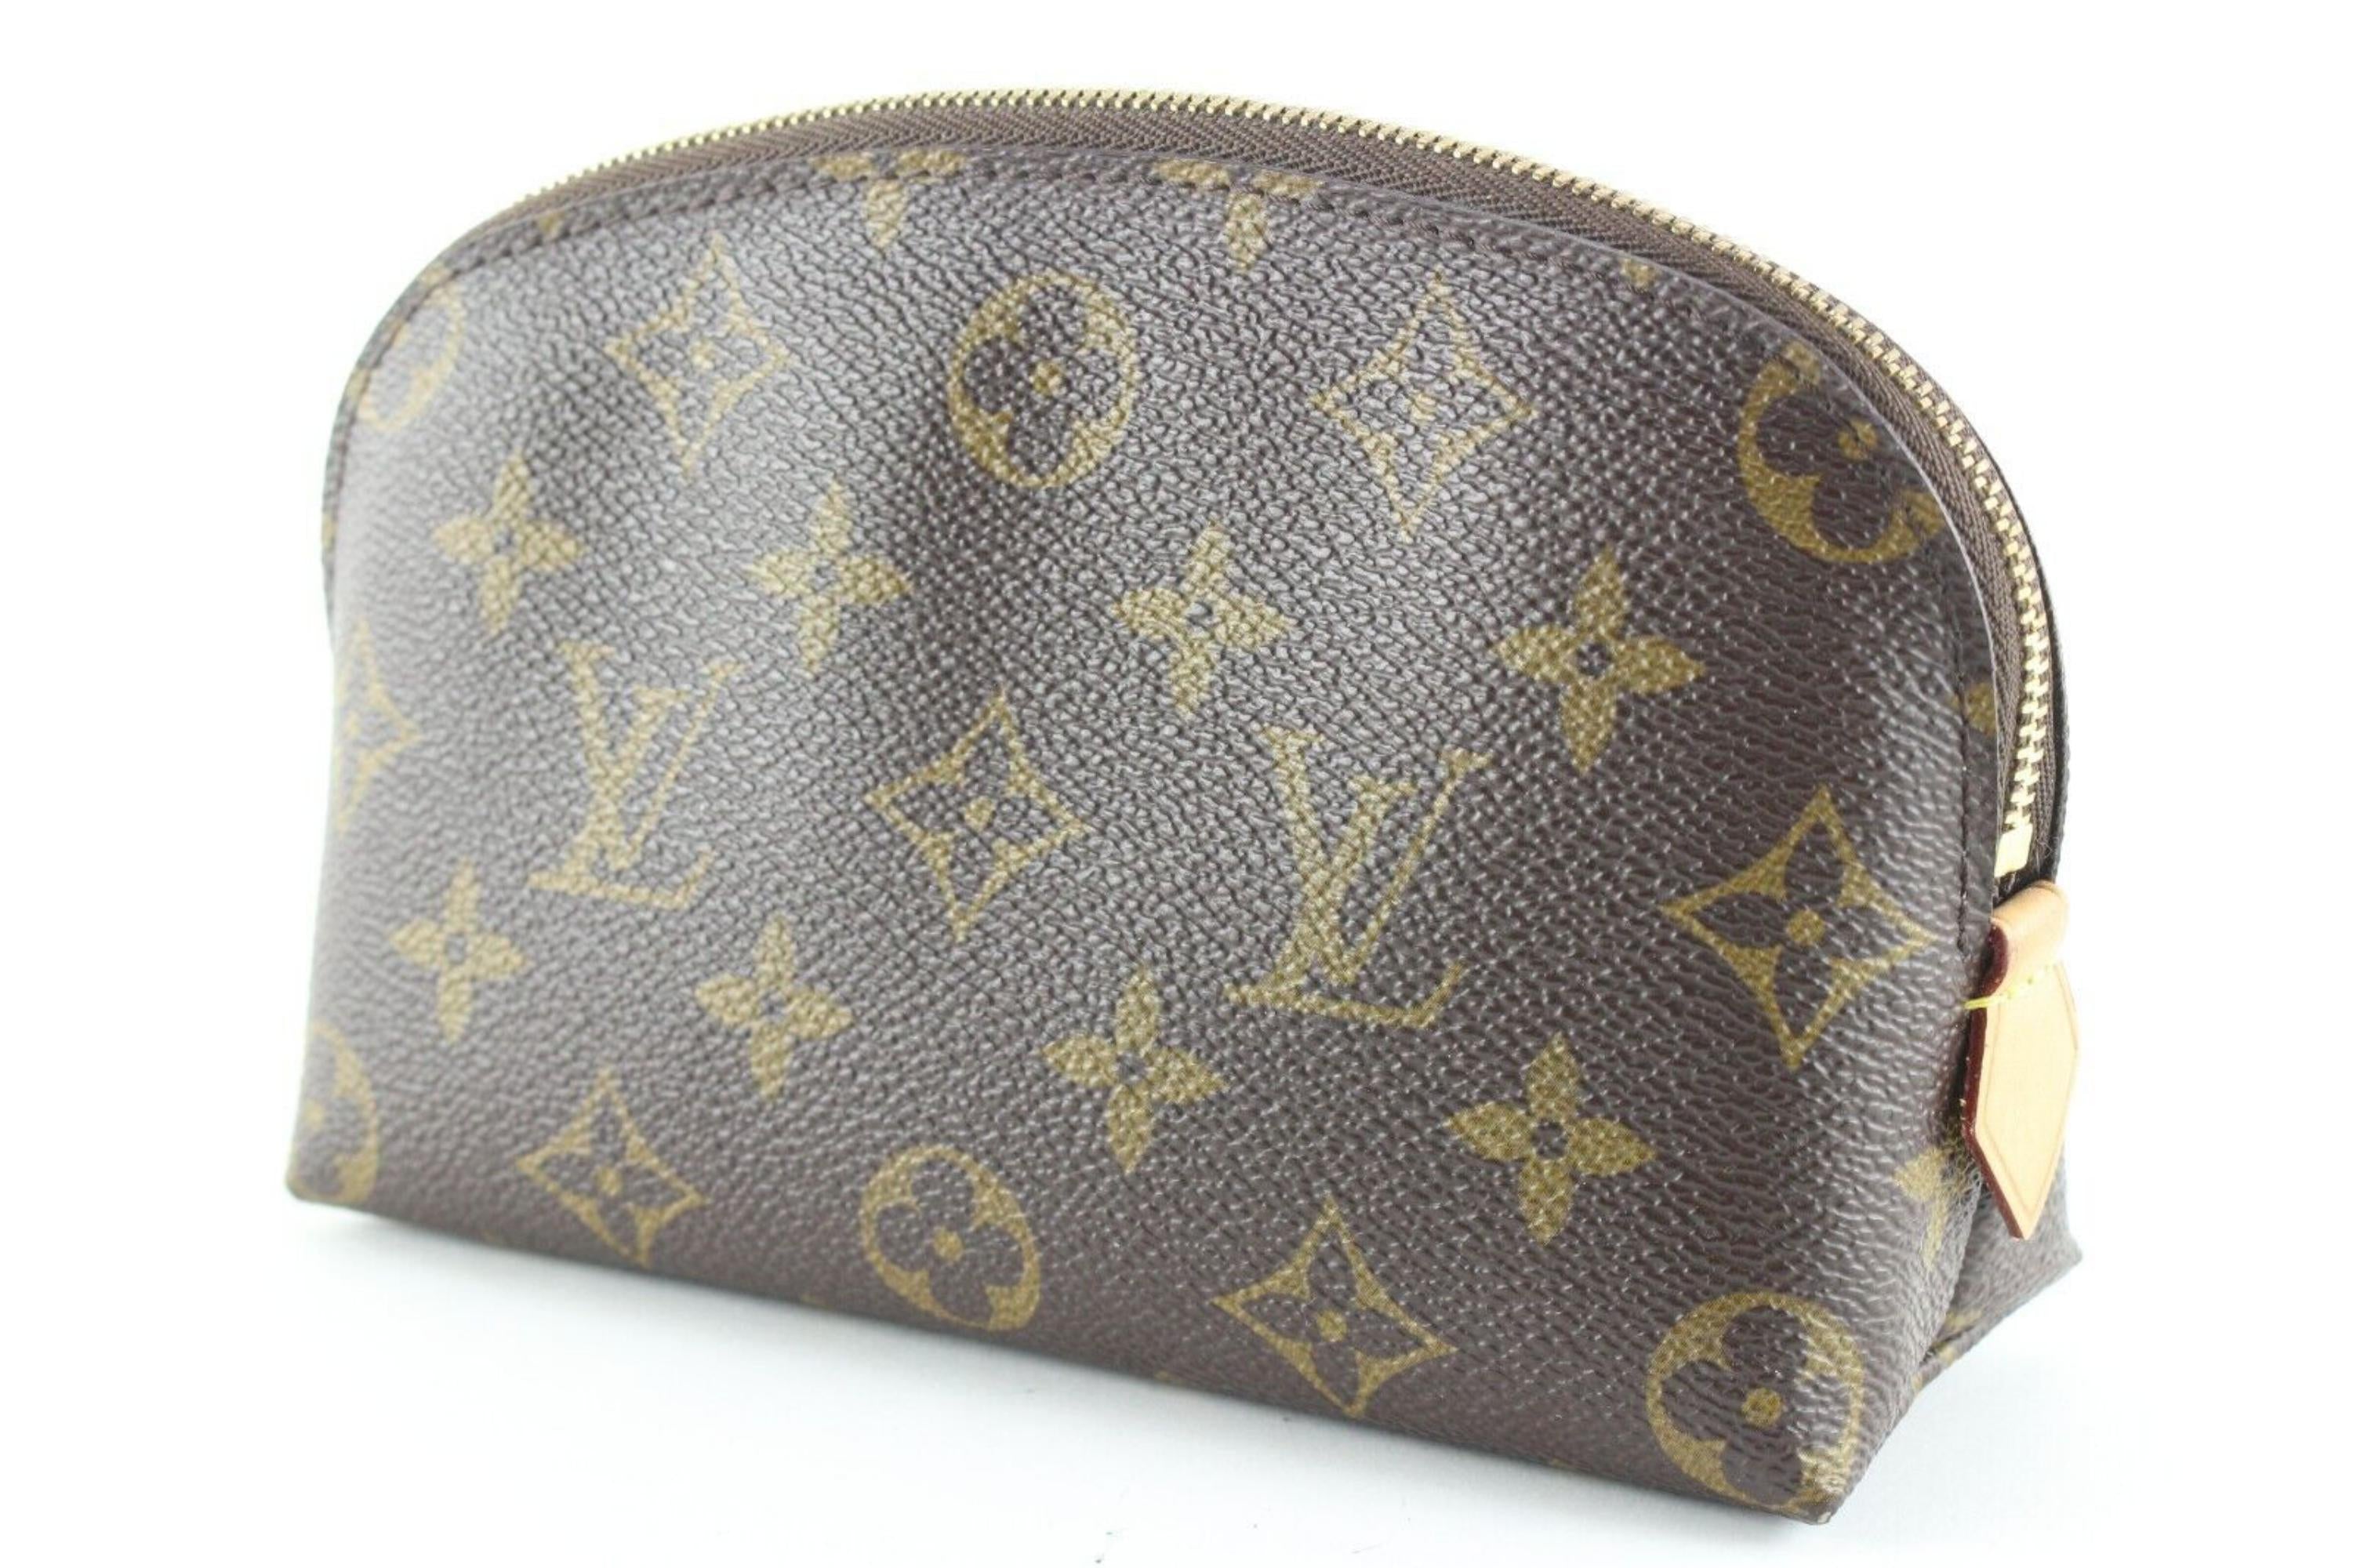 Louis Vuitton Yellow Cosmetic Bags for Women